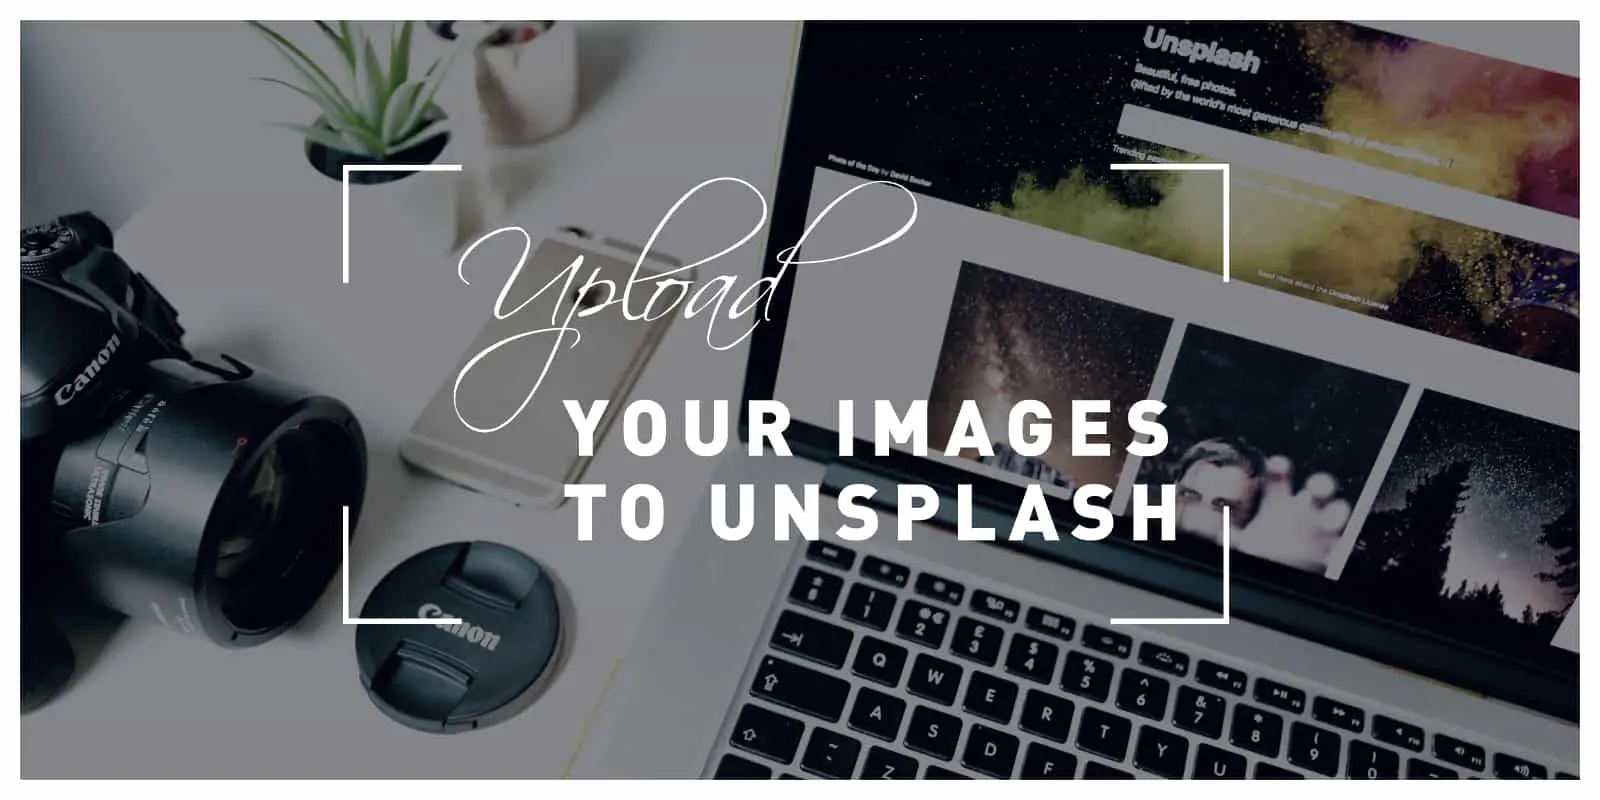 Upload images to unsplash